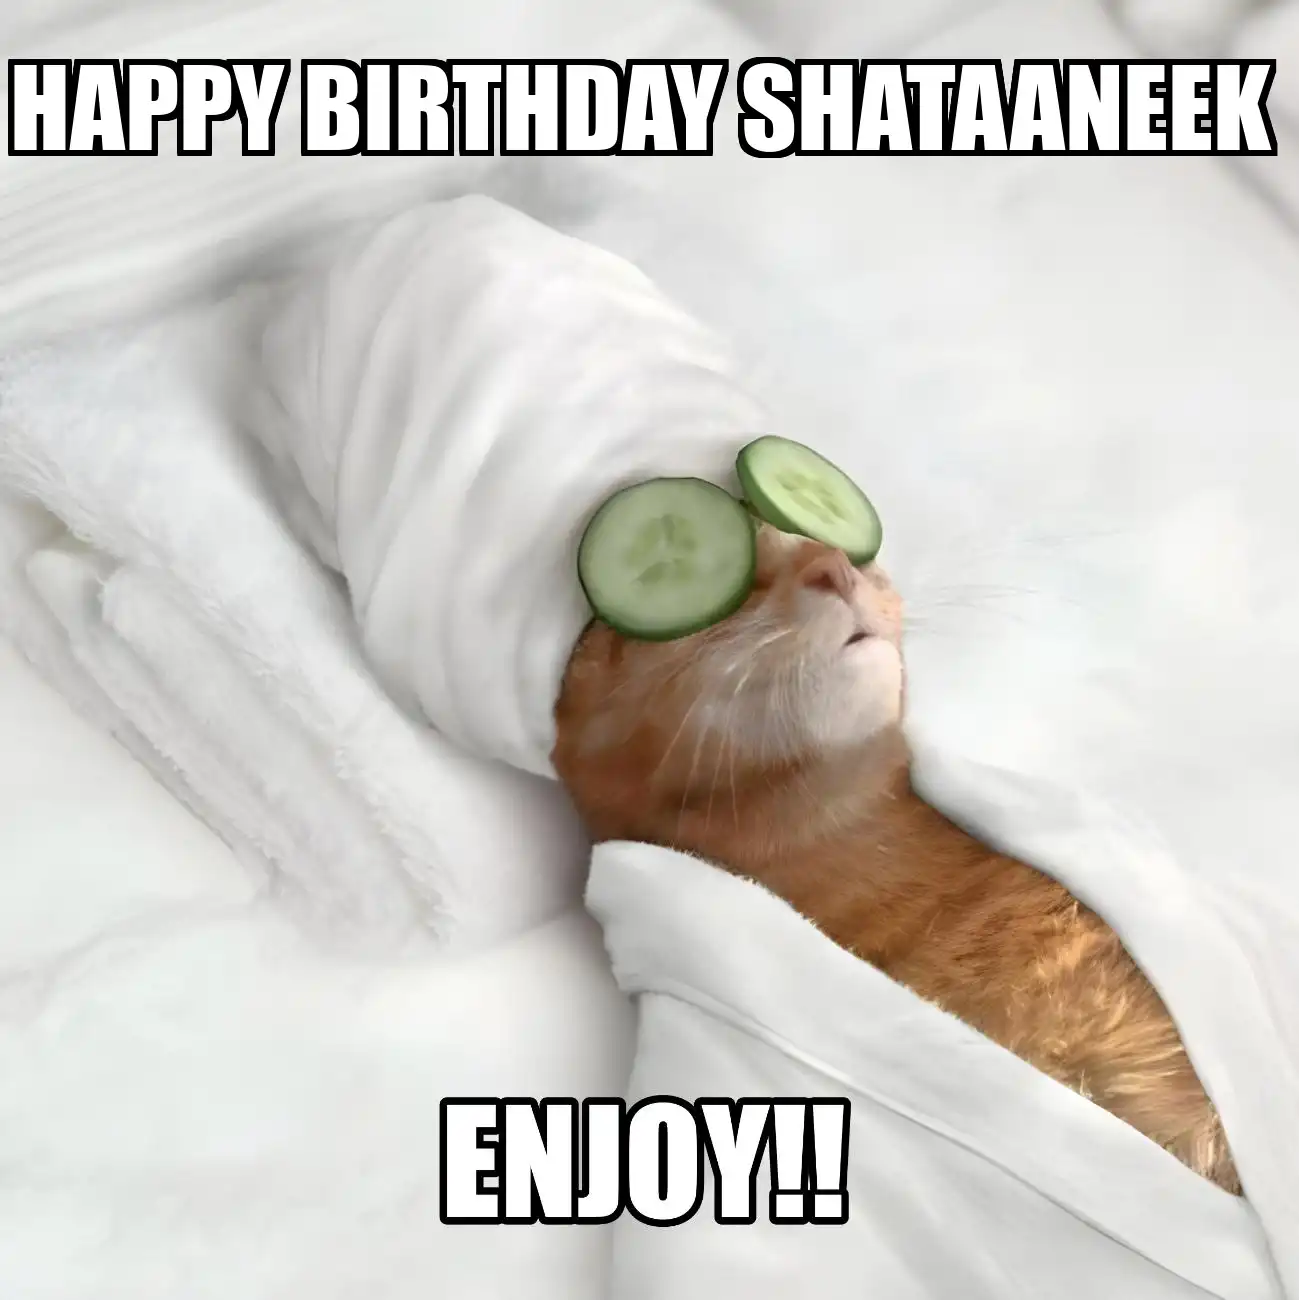 Happy Birthday Shataaneek Enjoy Cat Meme